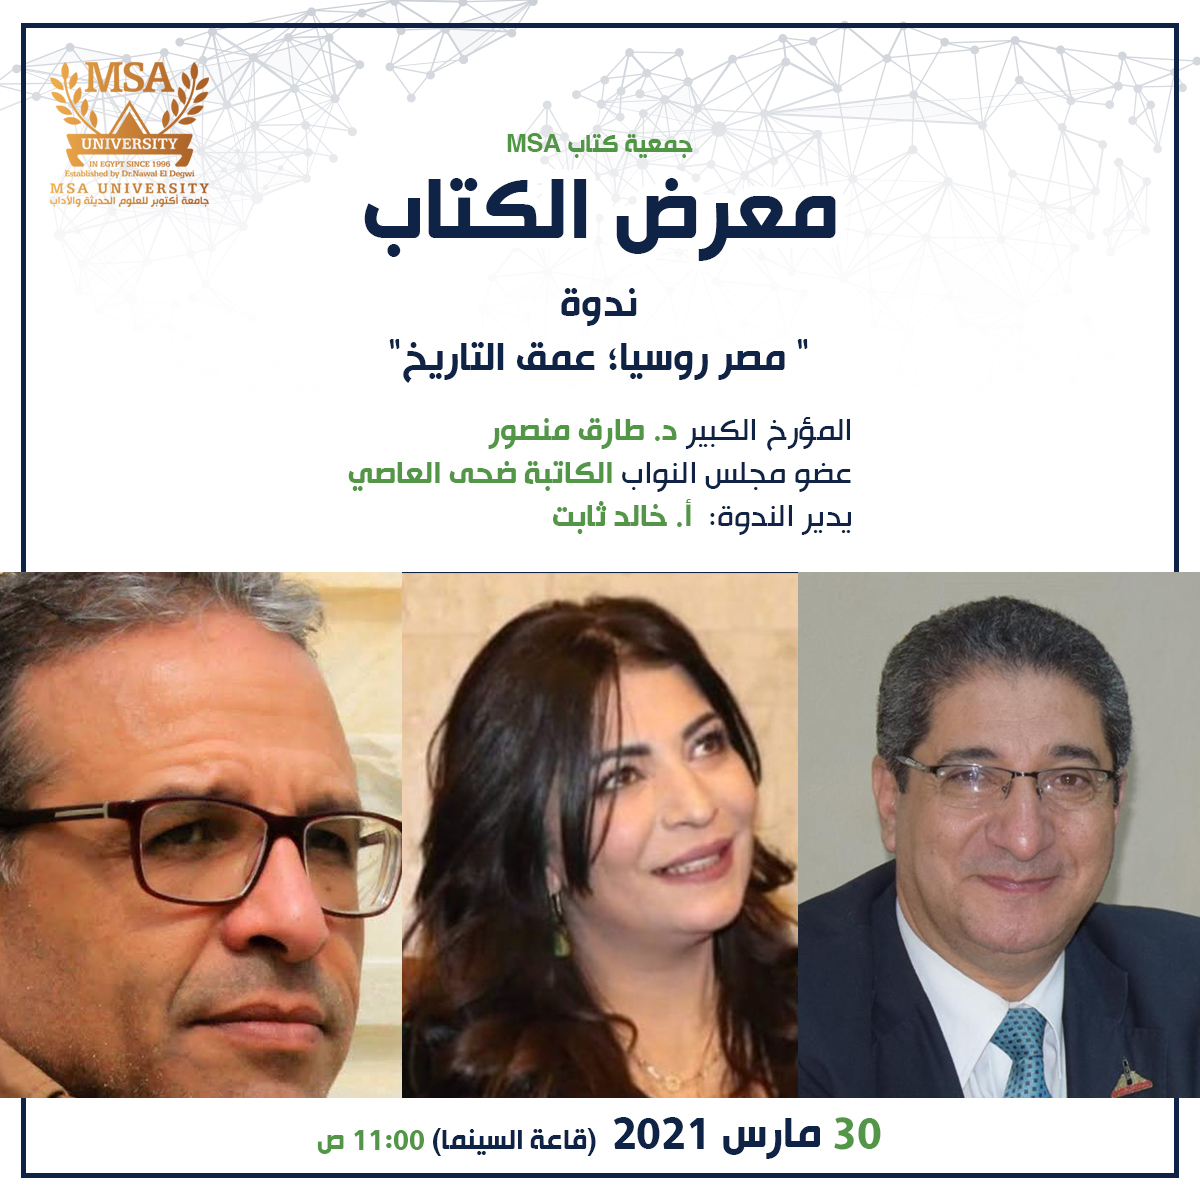 MSA University - Tarek Mansour, Doha El Asi and Khaled Thabet 